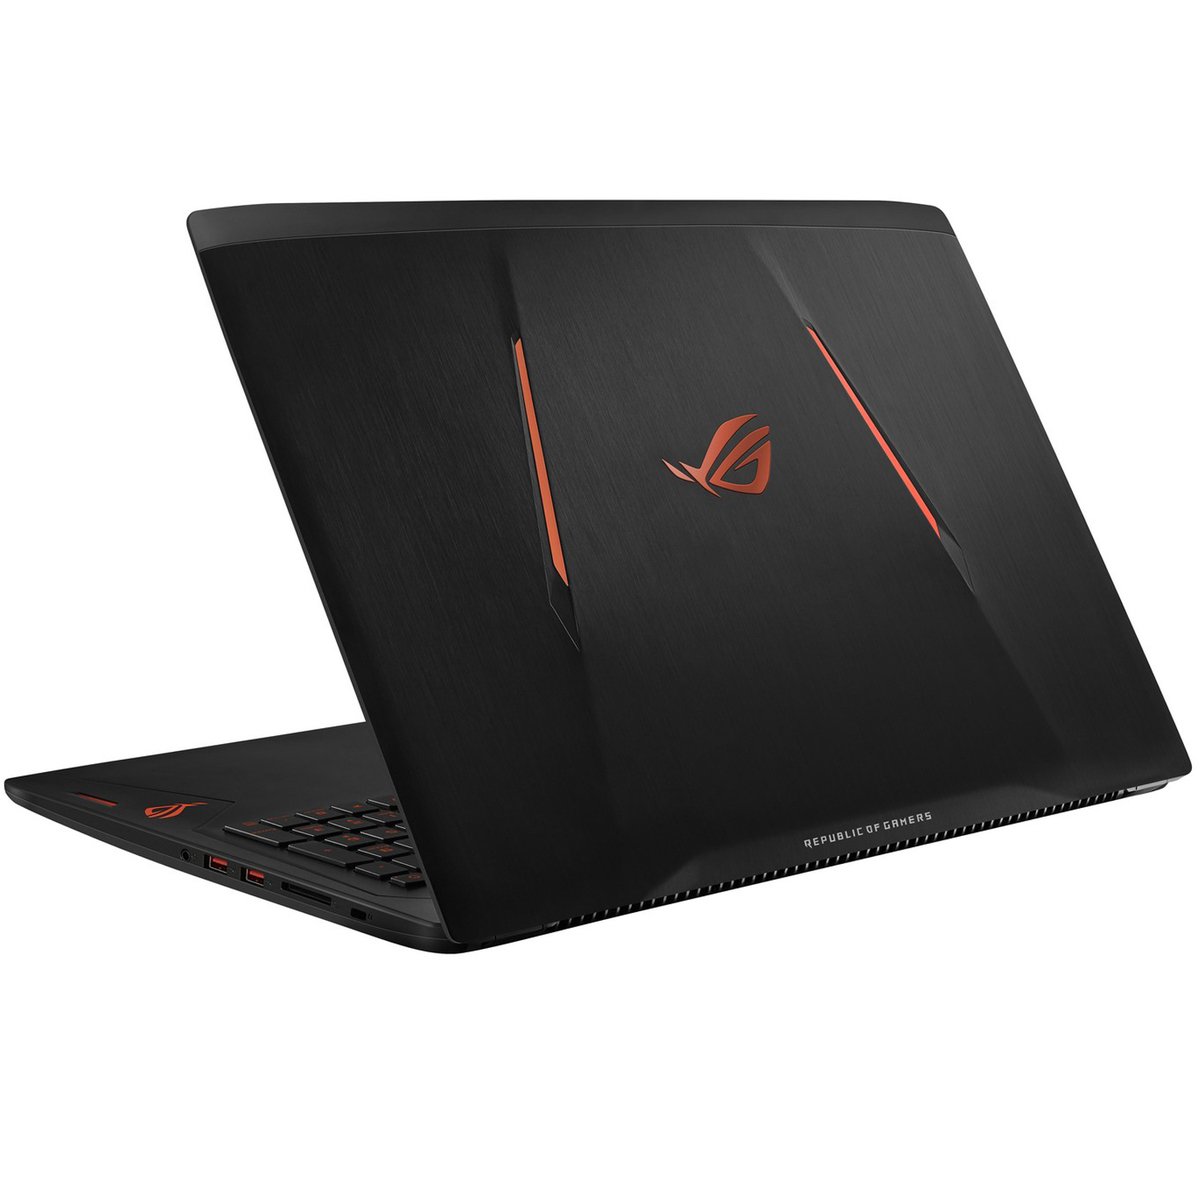 Asus Gaming Notebook ROG STRIX GL553VW-FY036T Black